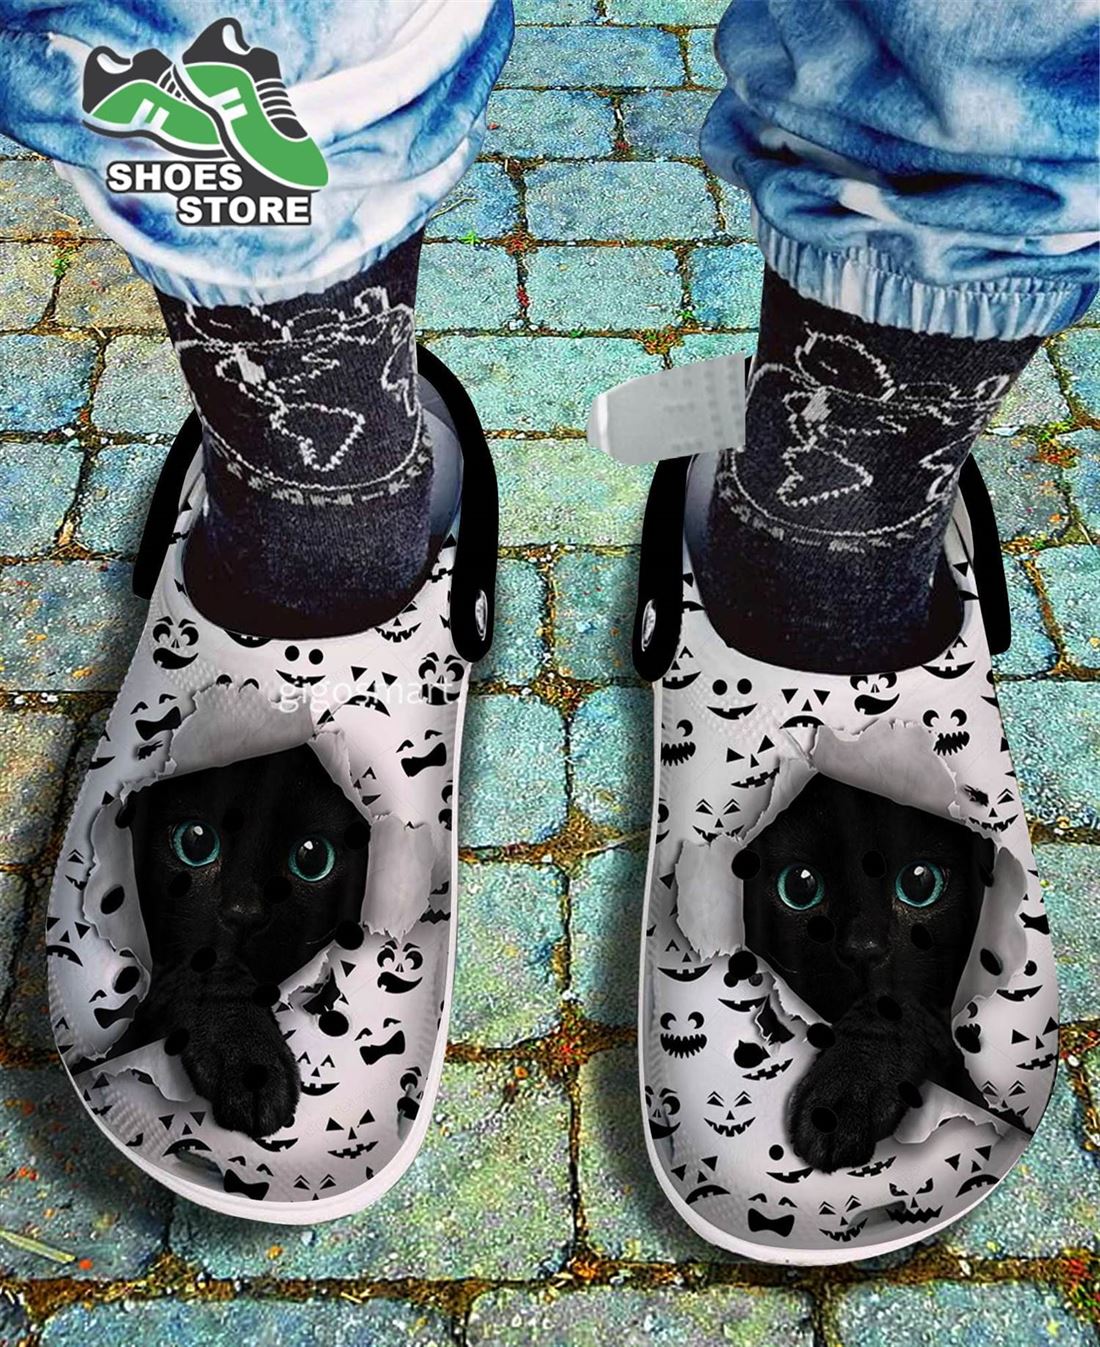 Cute 3D Black Cat Crocs Shoes, Scary Face Pumpkin Pattern Crocs Shoes Mother